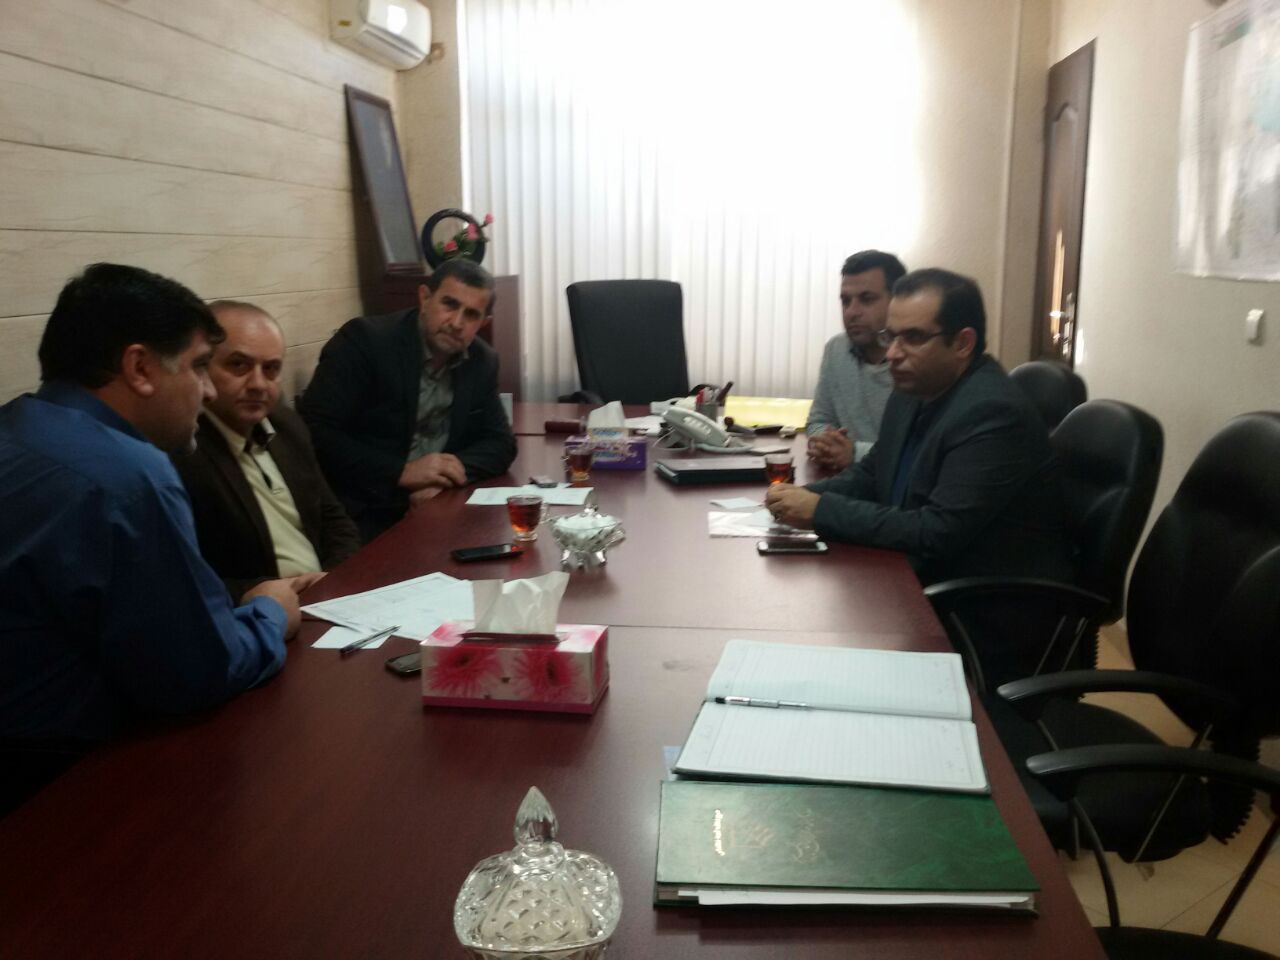 برگزاری جلسه هم اندیشی هیأت رئیسه دفتر نمایندگی با بخشداری و شورای بخش شهرستان عباس آباد
